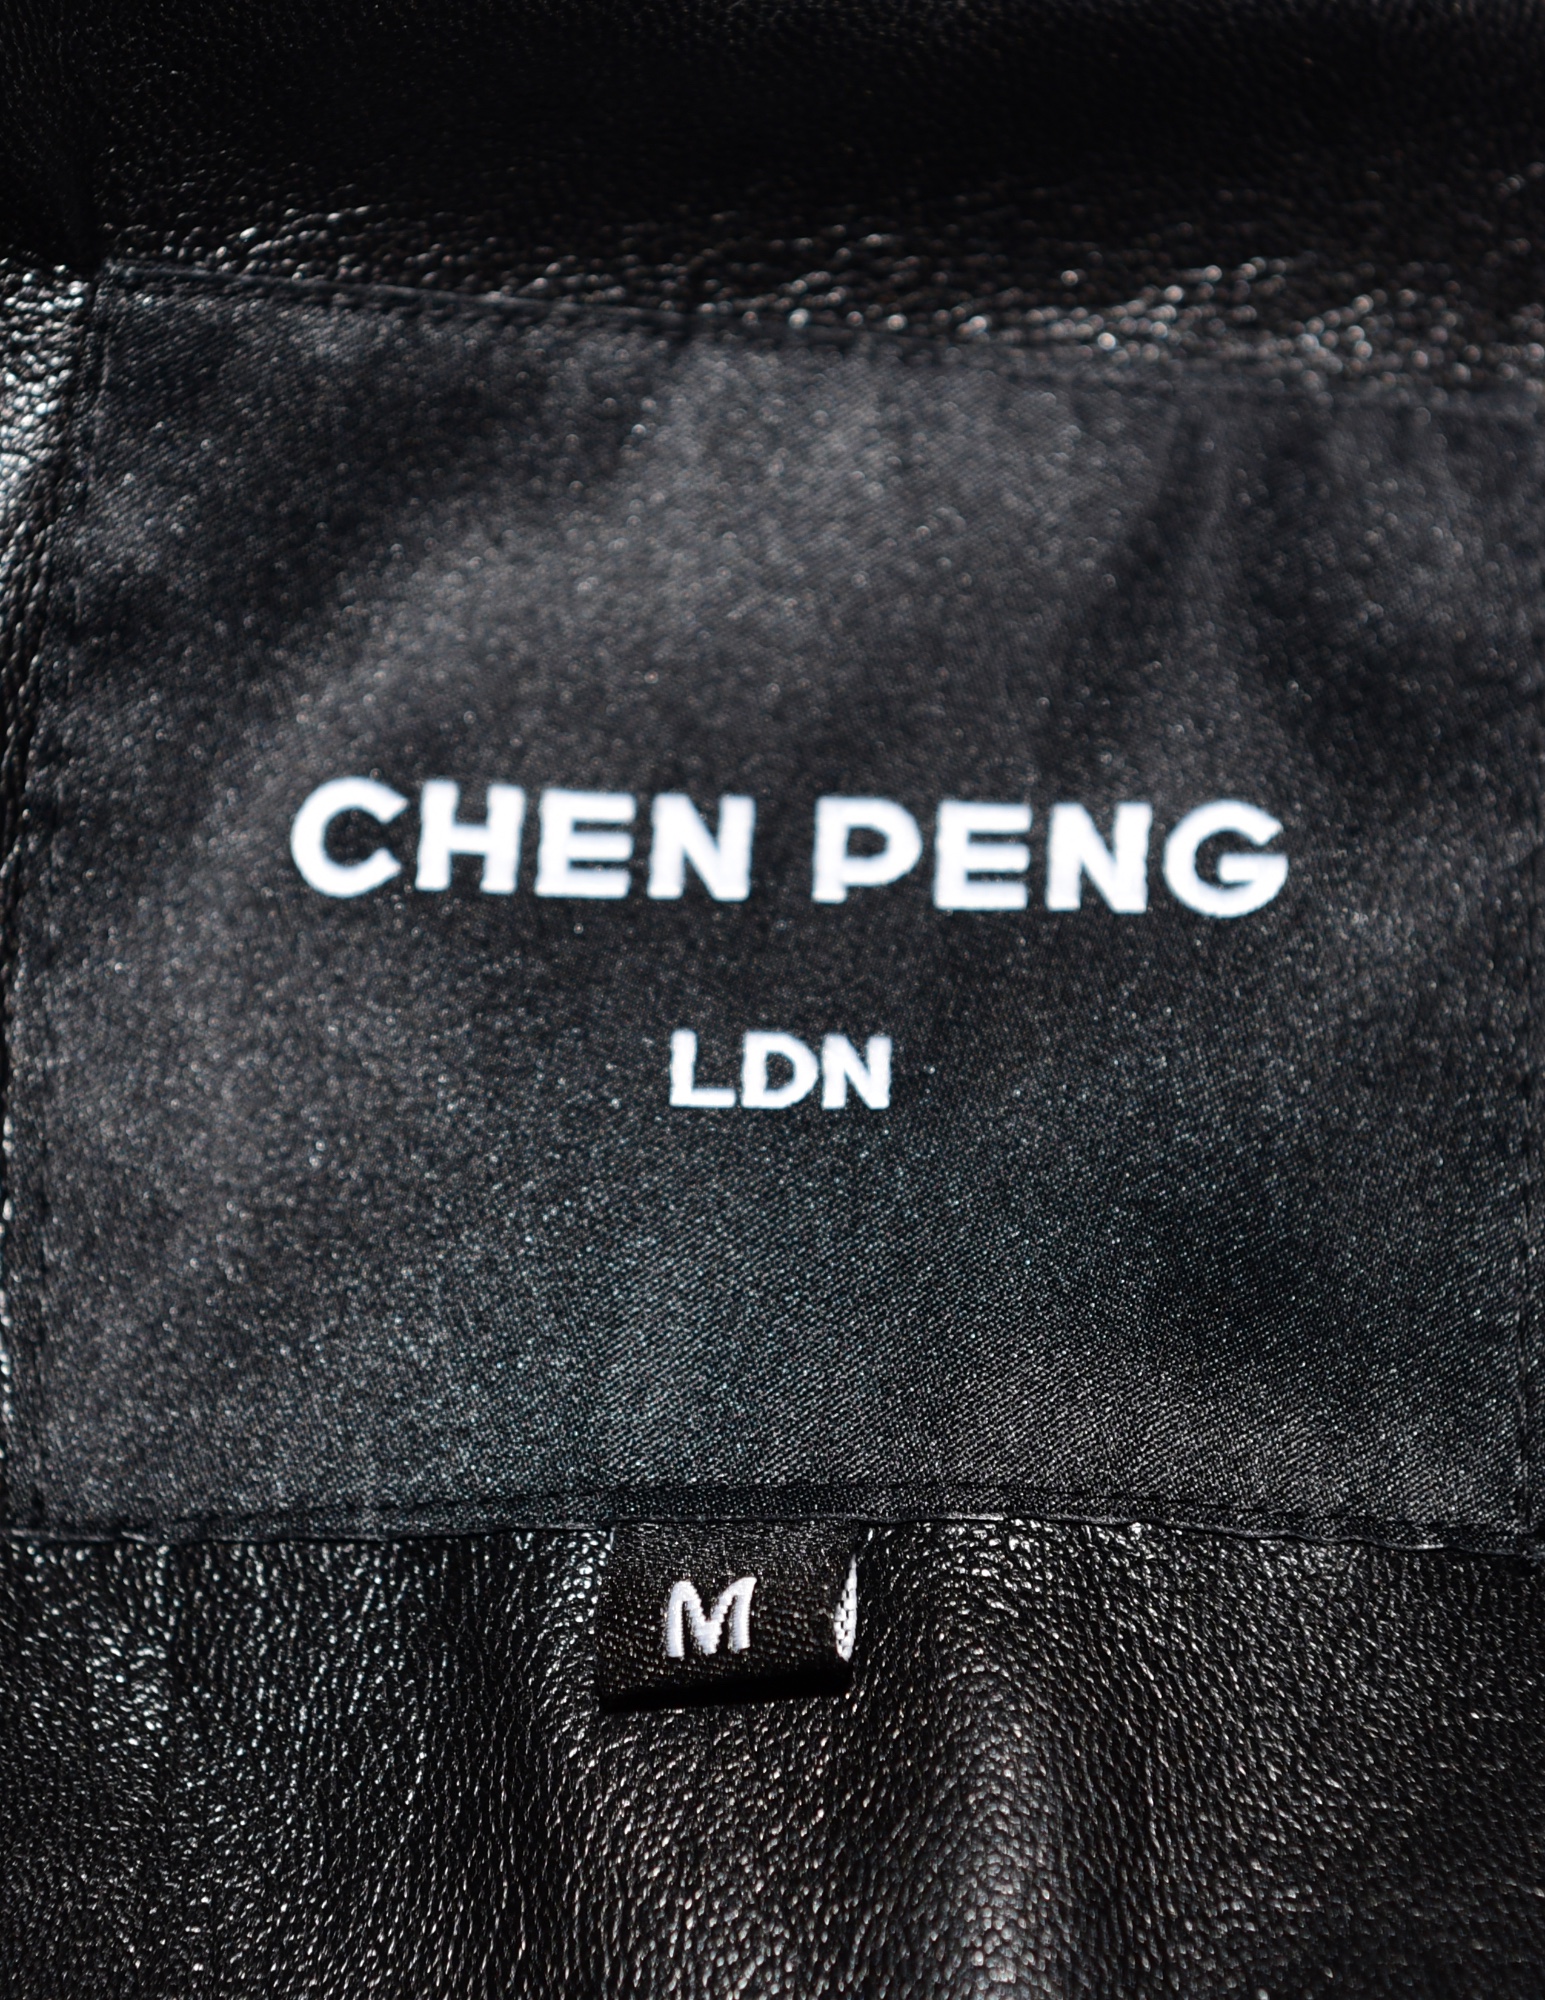 Chen Peng FW 22 Graffiti Fur Coat - 3